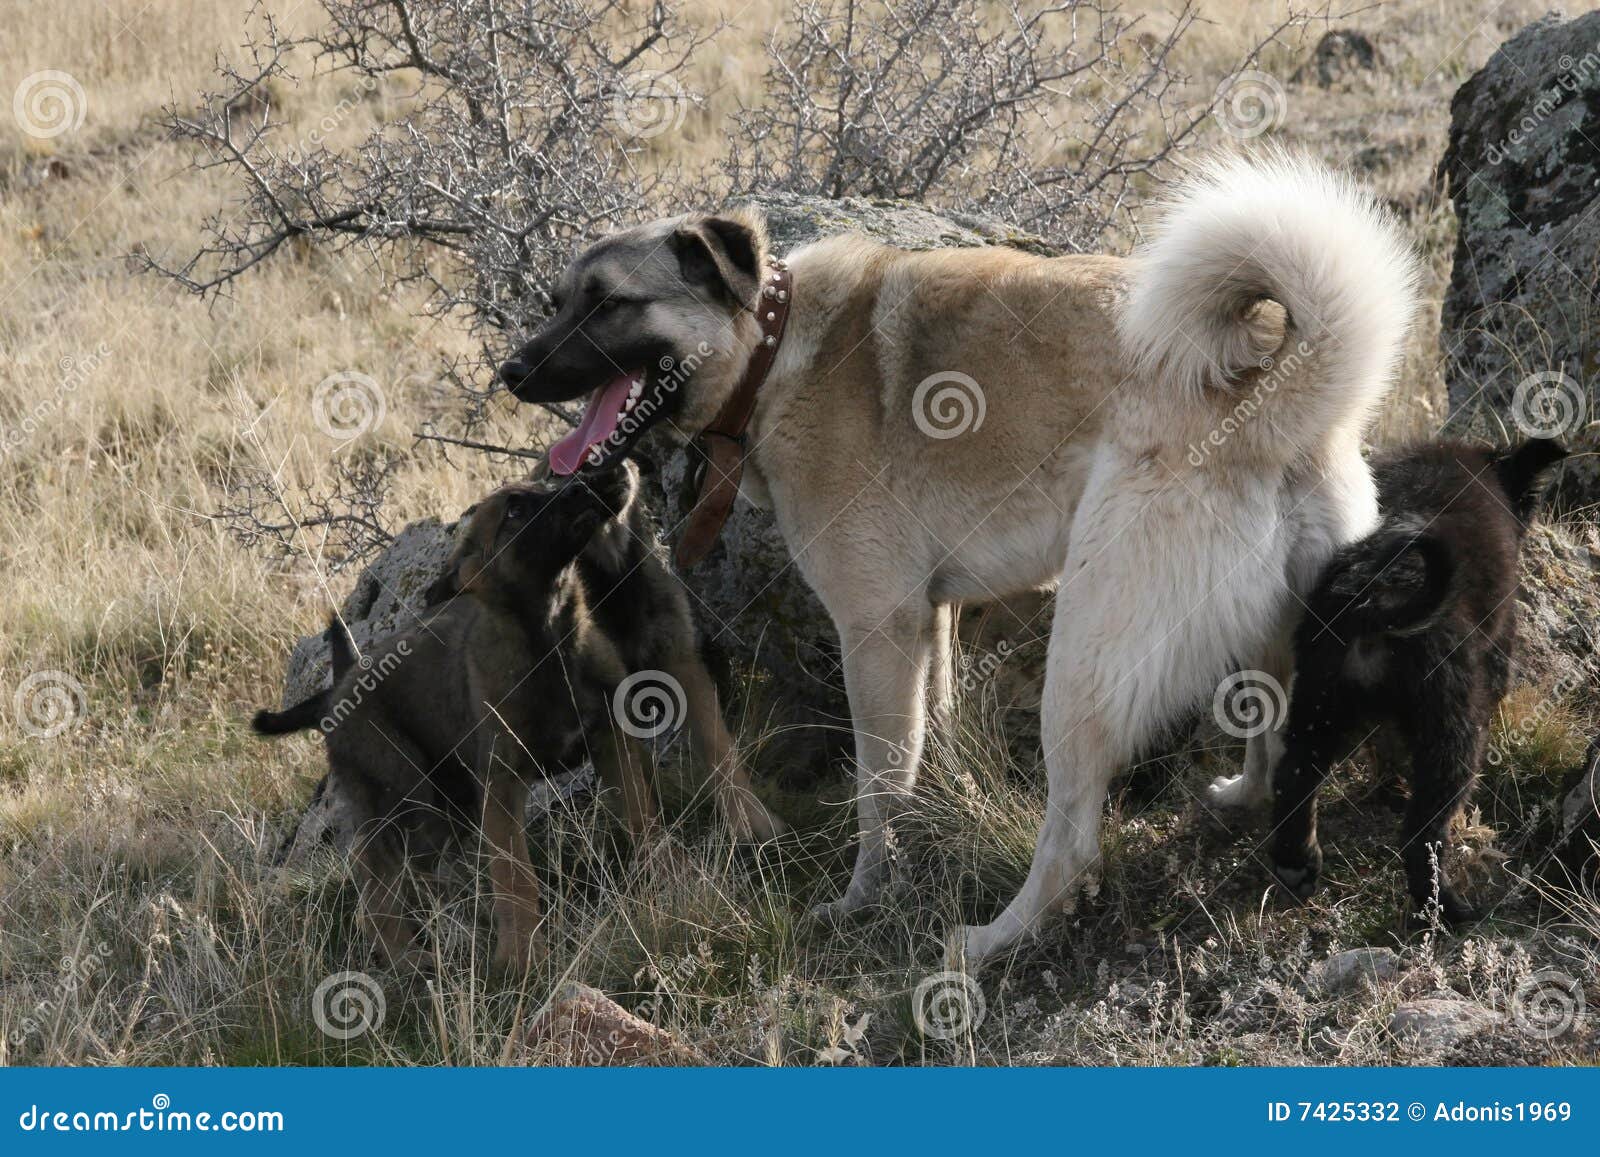 anatolian shepherd dog kangal